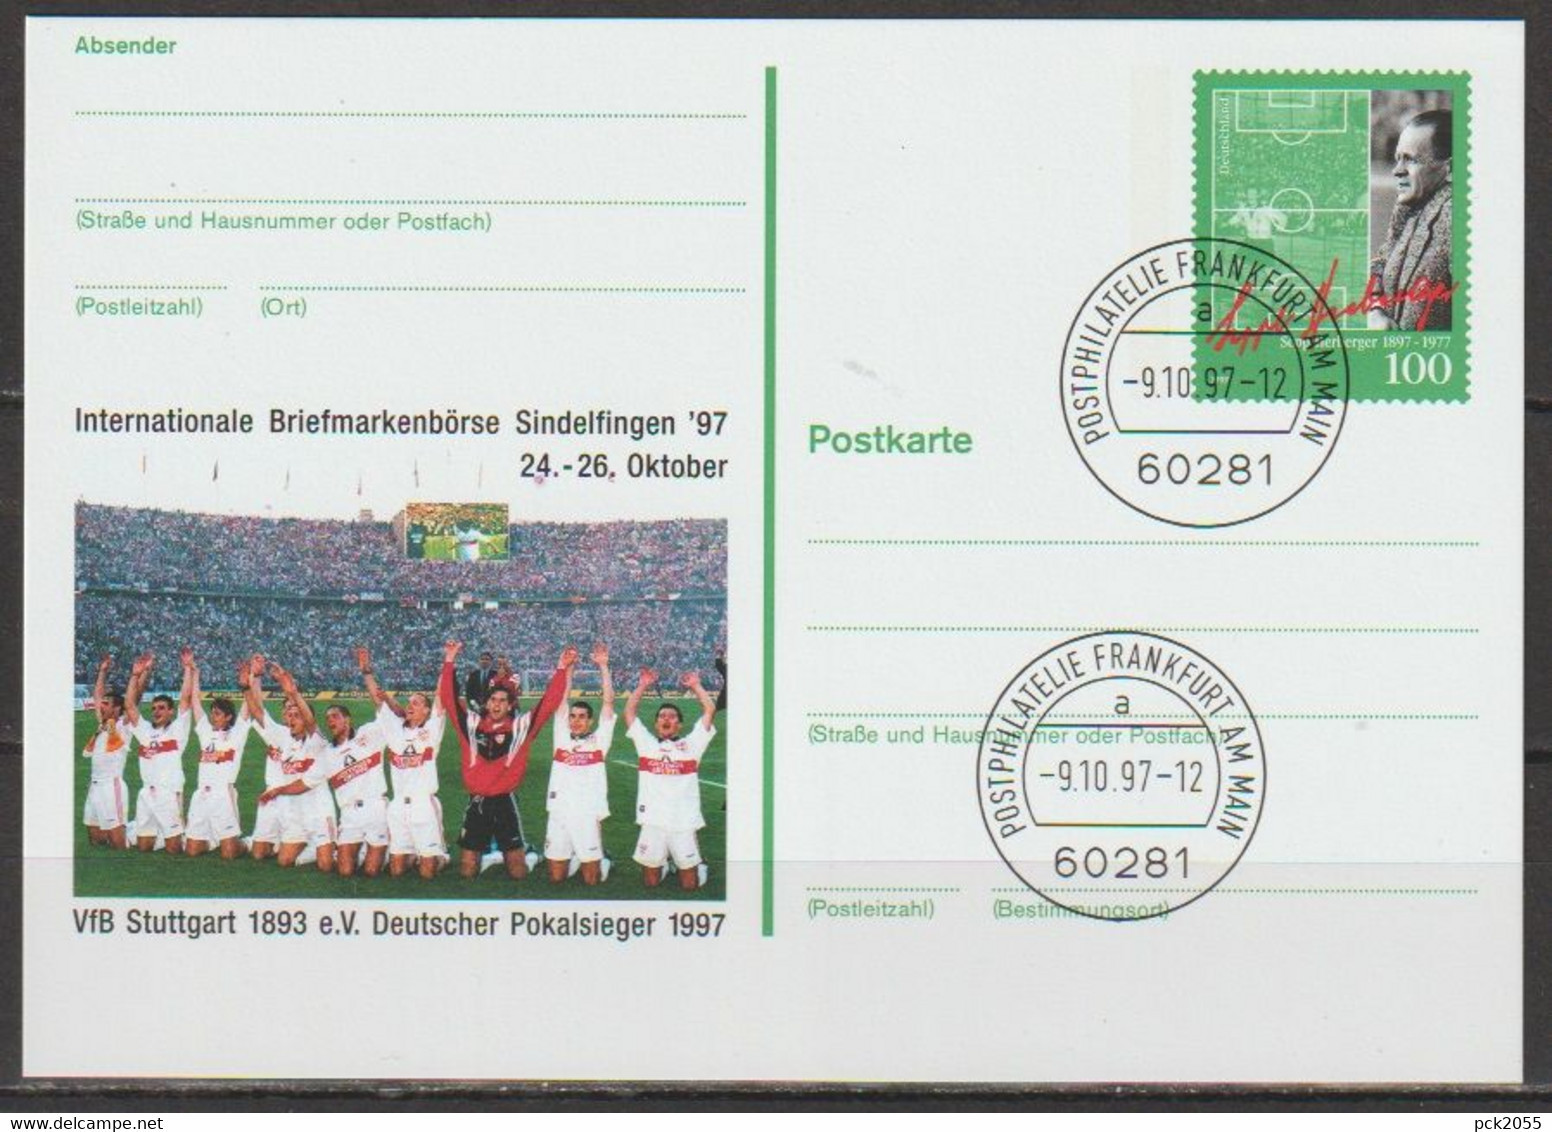 BRD Ganzsache 1997 PSo50 Briefmarkenbörse Sindelfingen EST. 9.10.97 Postphilatelie Frankfurt(d186)günstige Versandkosten - Postkarten - Gebraucht